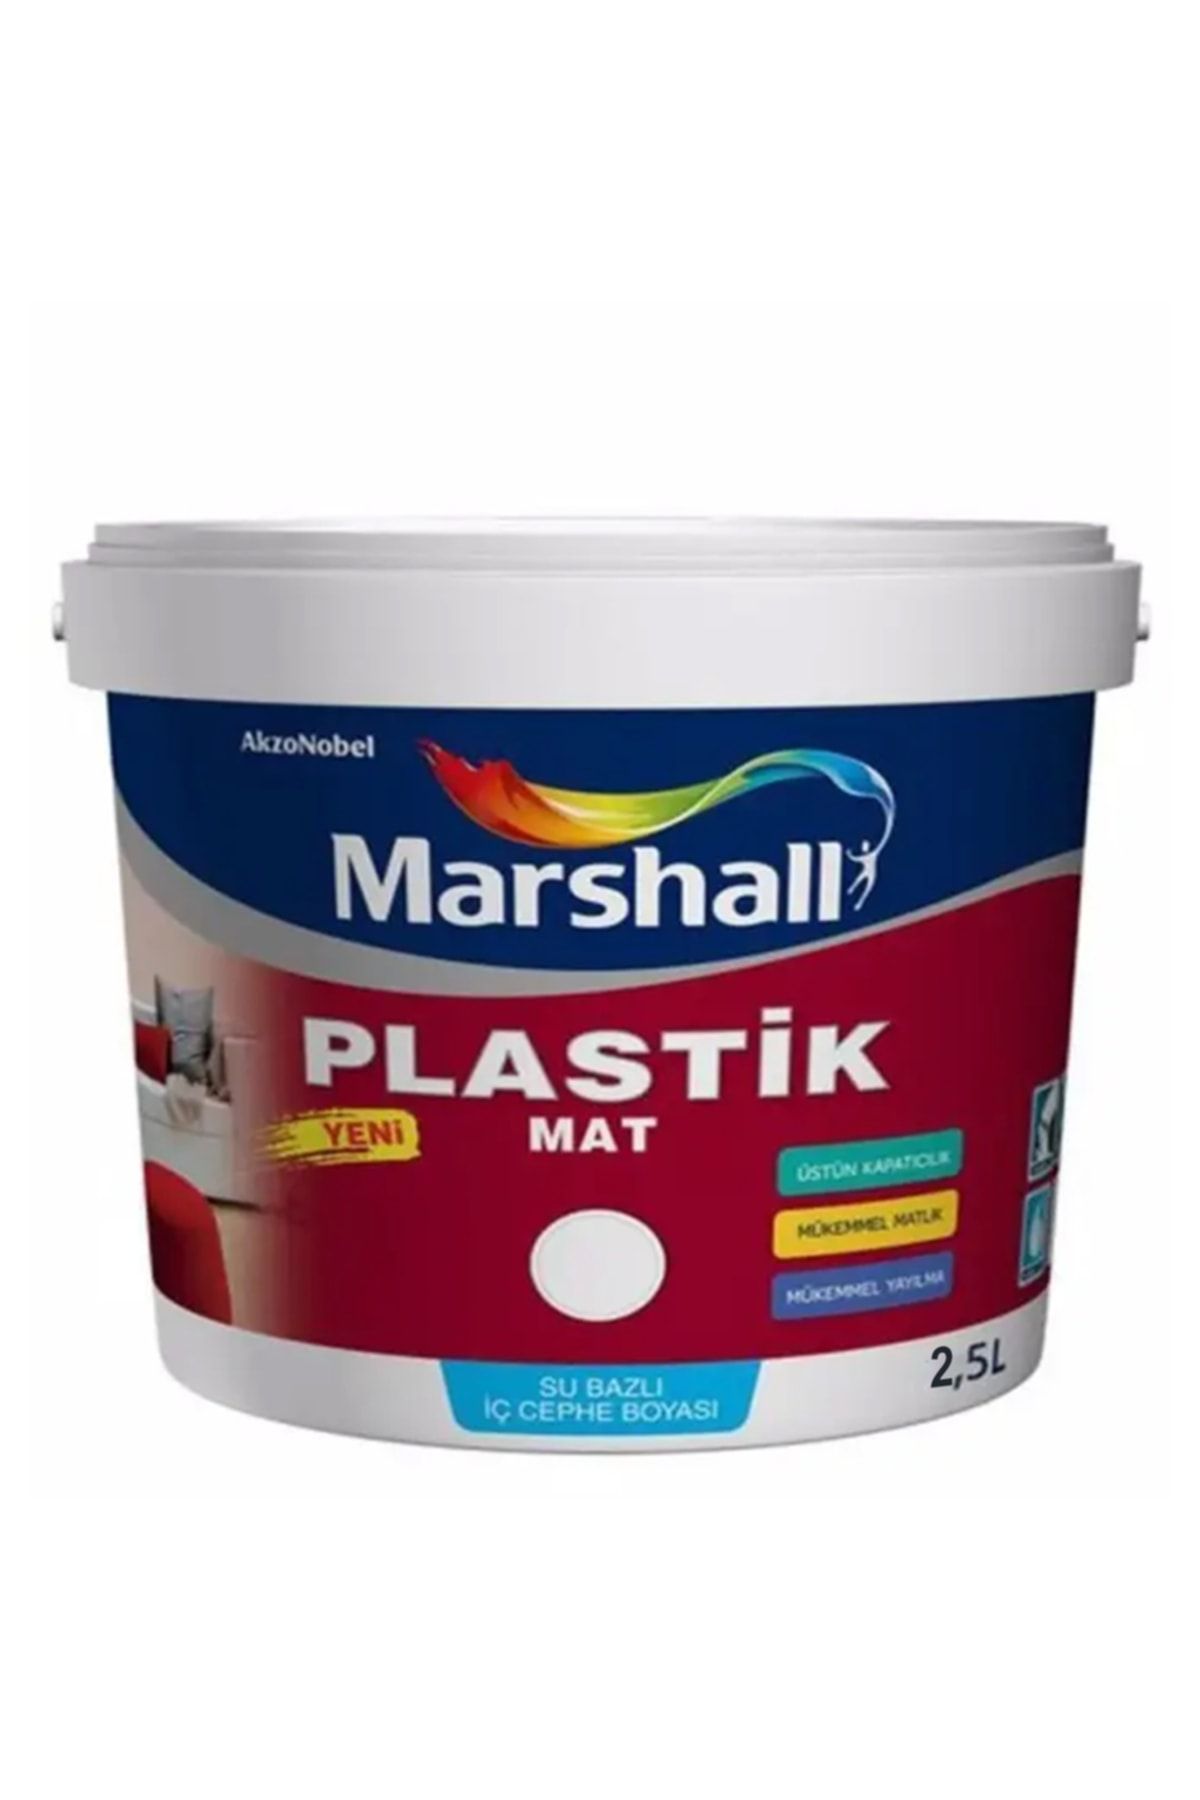 Marshall Plastik Mat Silinebilir Iç Cephe Boyası Kozalak 2,5 Lt (3,5 Kg)